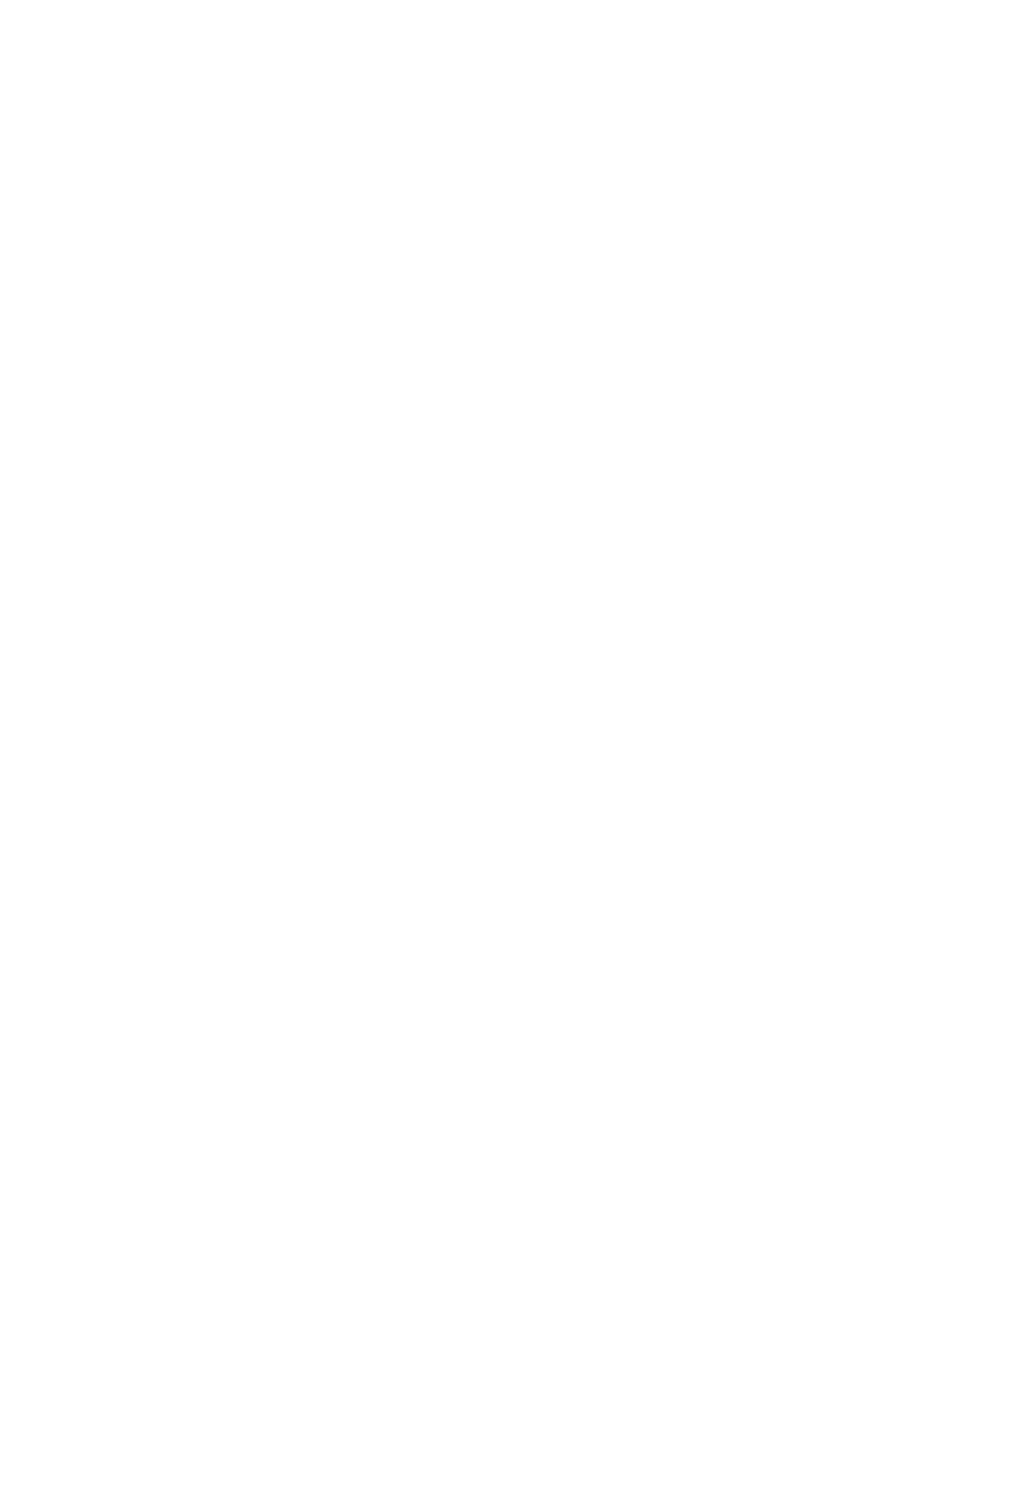 DEME Group logo for dark backgrounds (transparent PNG)